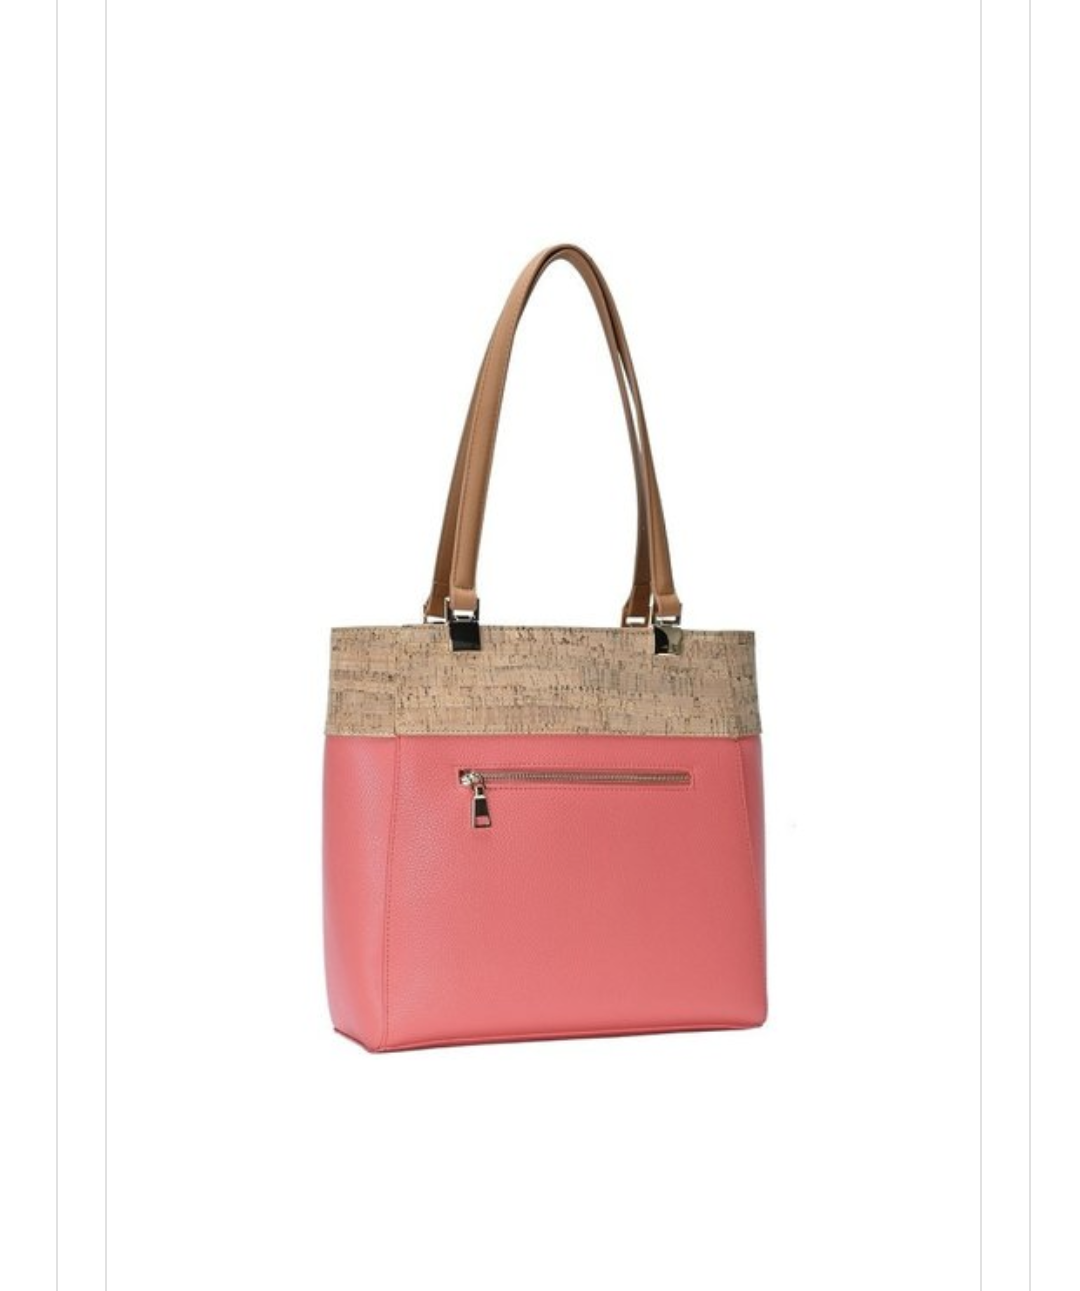 Tone Tote Bag Fashion Handbags